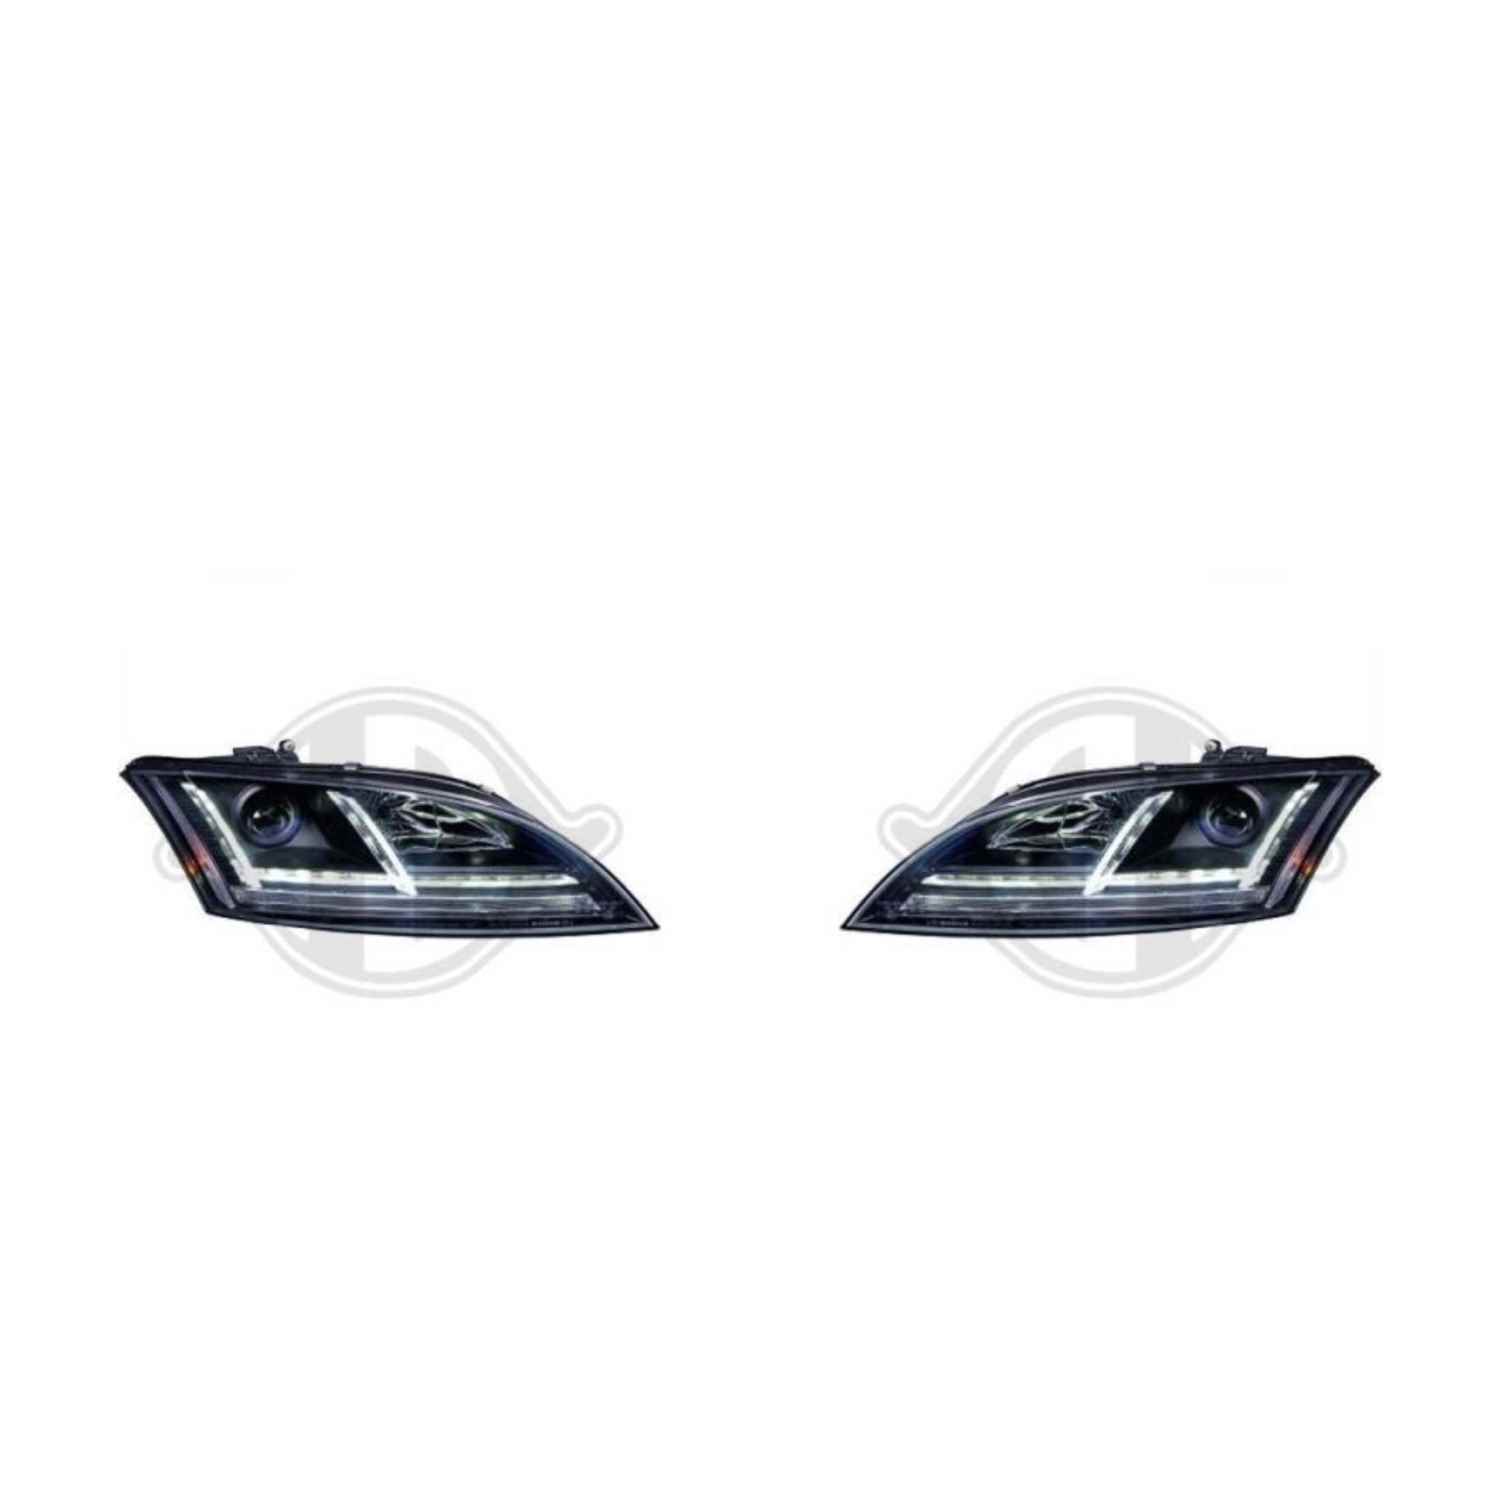 Hauptscheinwerfer Scheinwerfersatz für Audi TT Roadster mit Tagfahrlicht